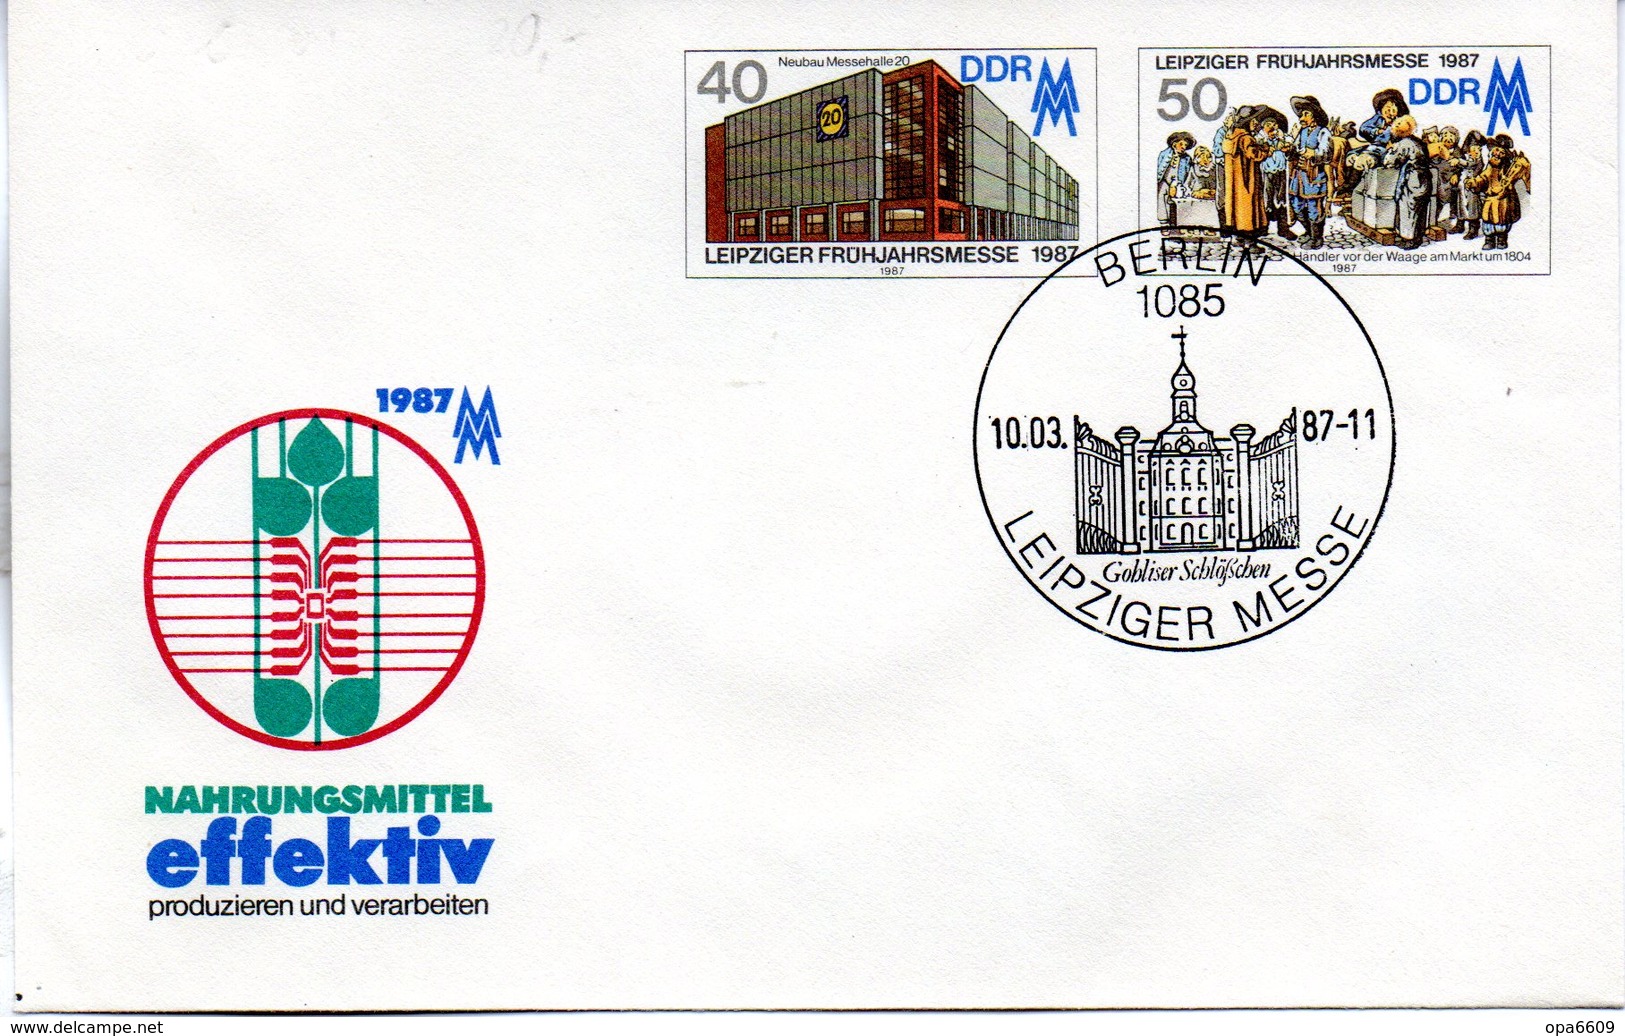 DDR Amtl. GZS-Umschlag U 6 40(Pf) Neben 50(Pf) Mehrfarbig "Leipziger Messe 1987" ESSt 10.3.87 BERLIN - Umschläge - Gebraucht